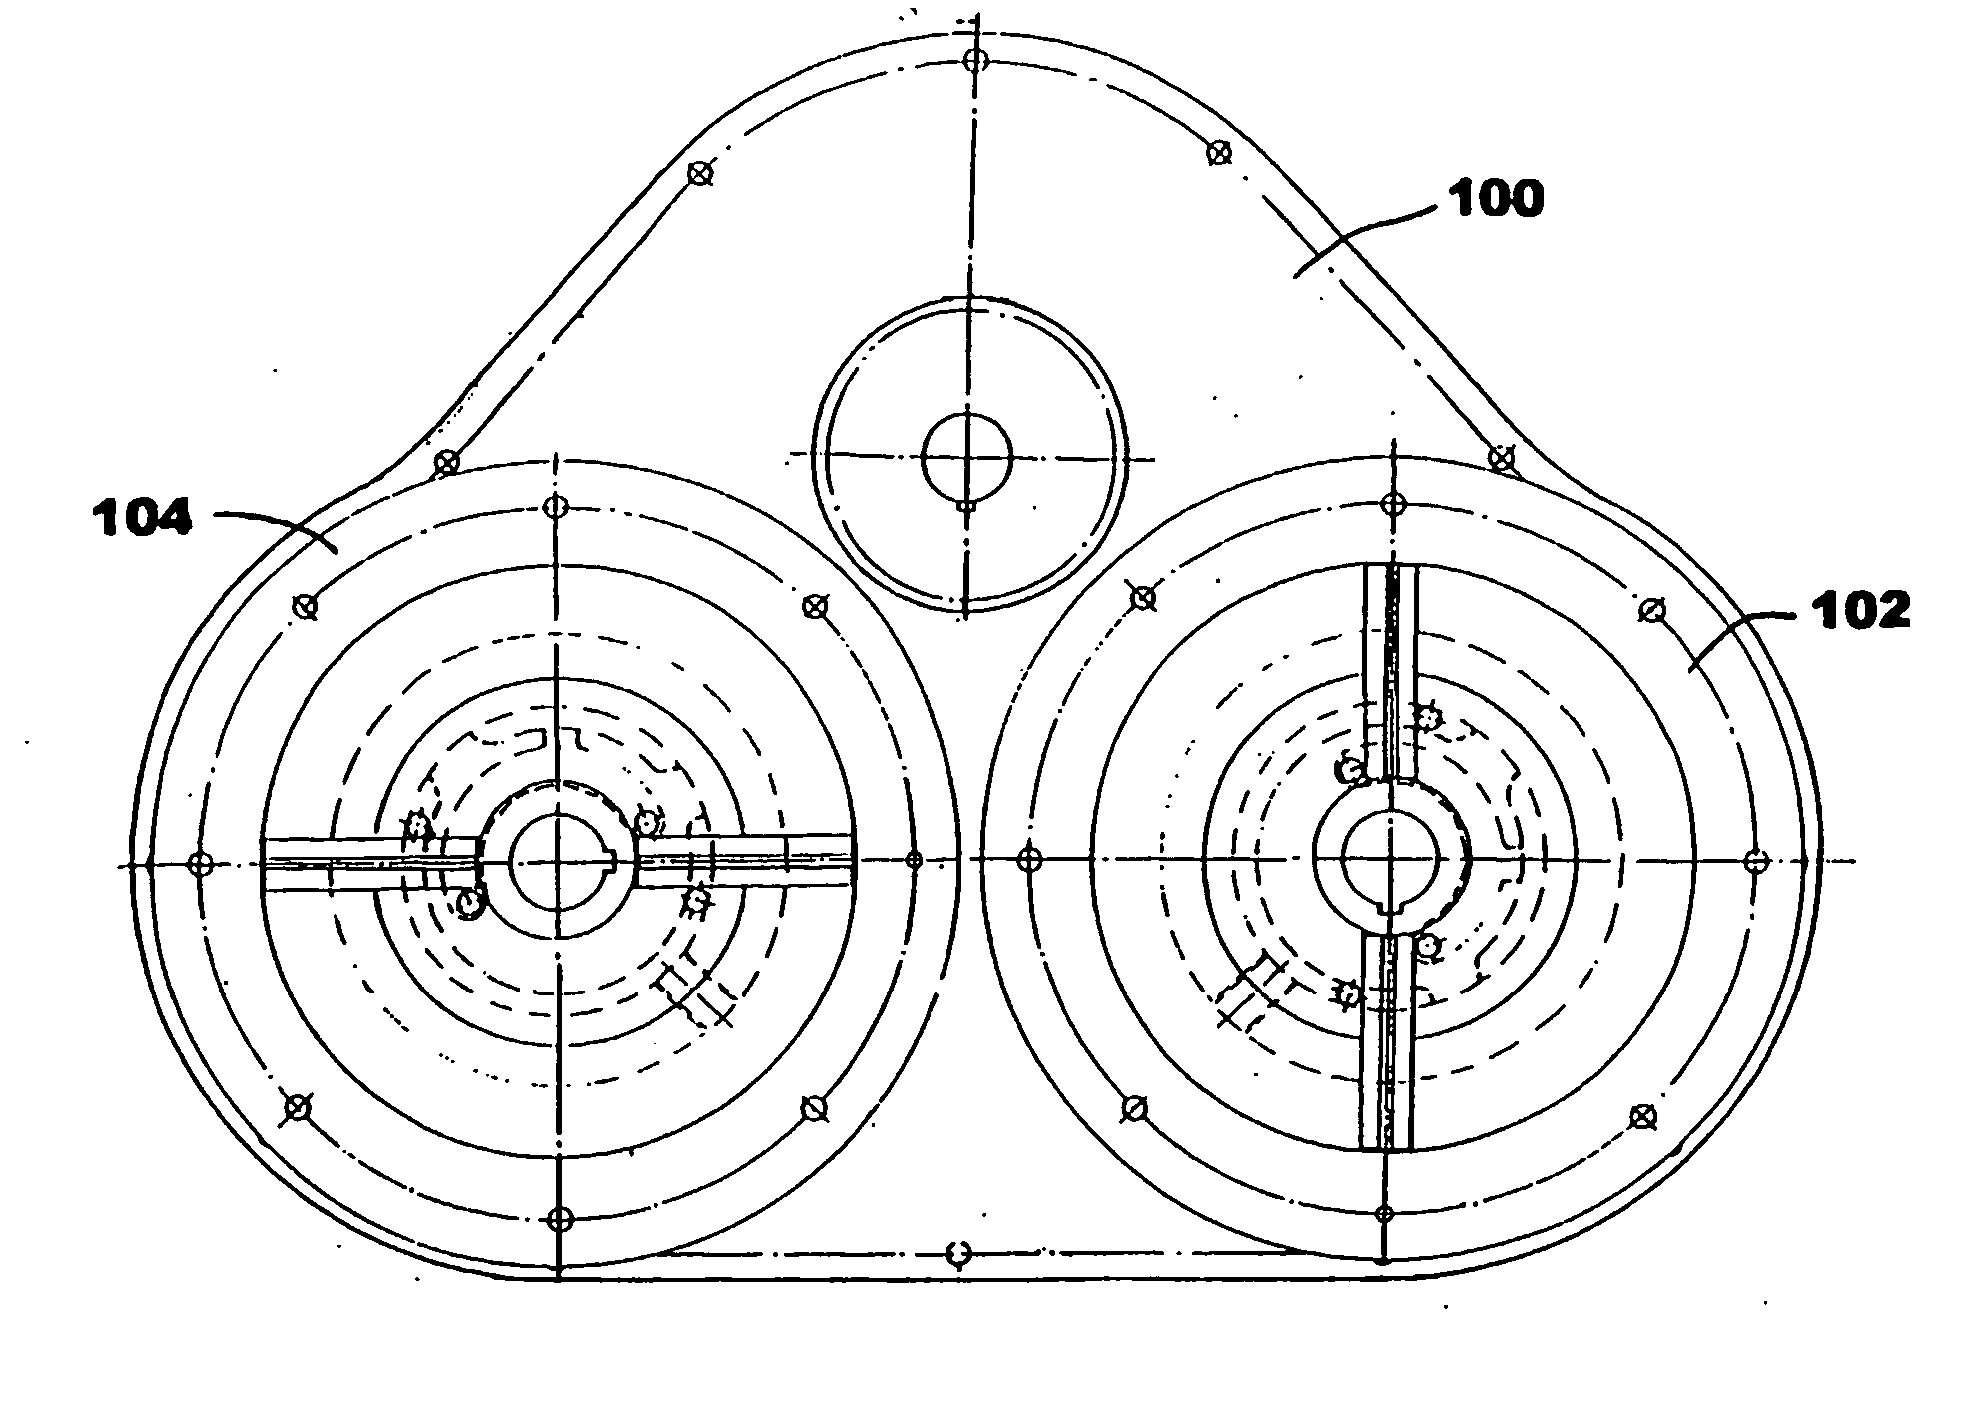 Orbital engine/pump with multiple toroidal cylinders